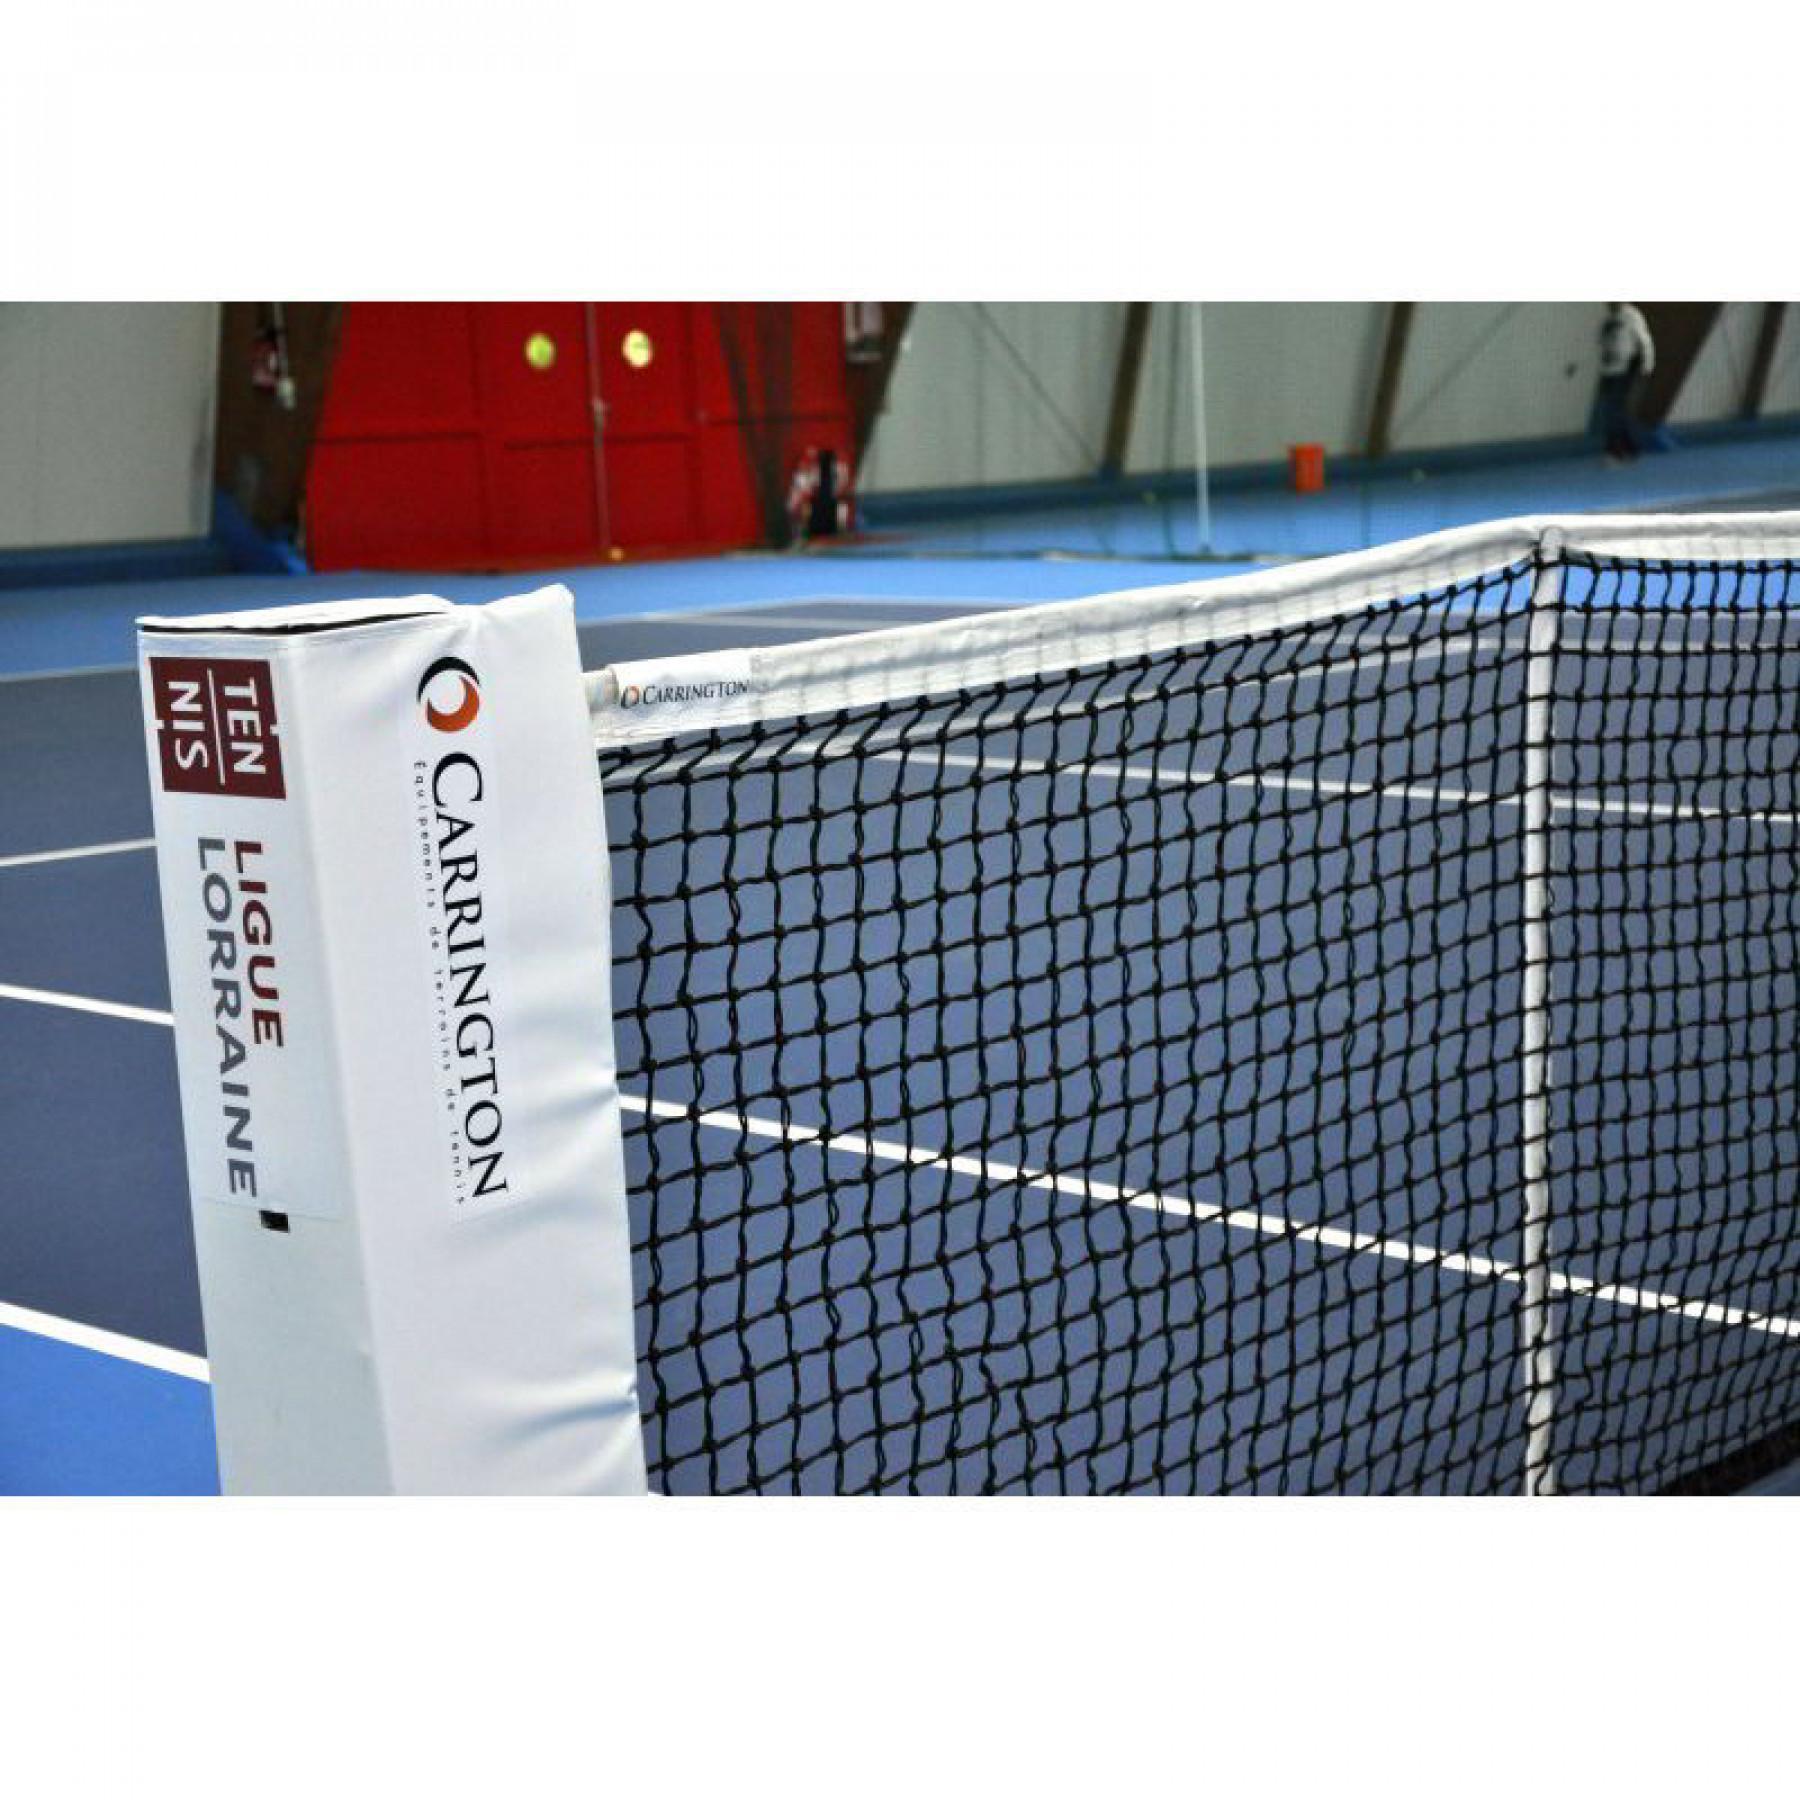 Rede de ténis de torneio de 3 mm de malha dupla Carrington